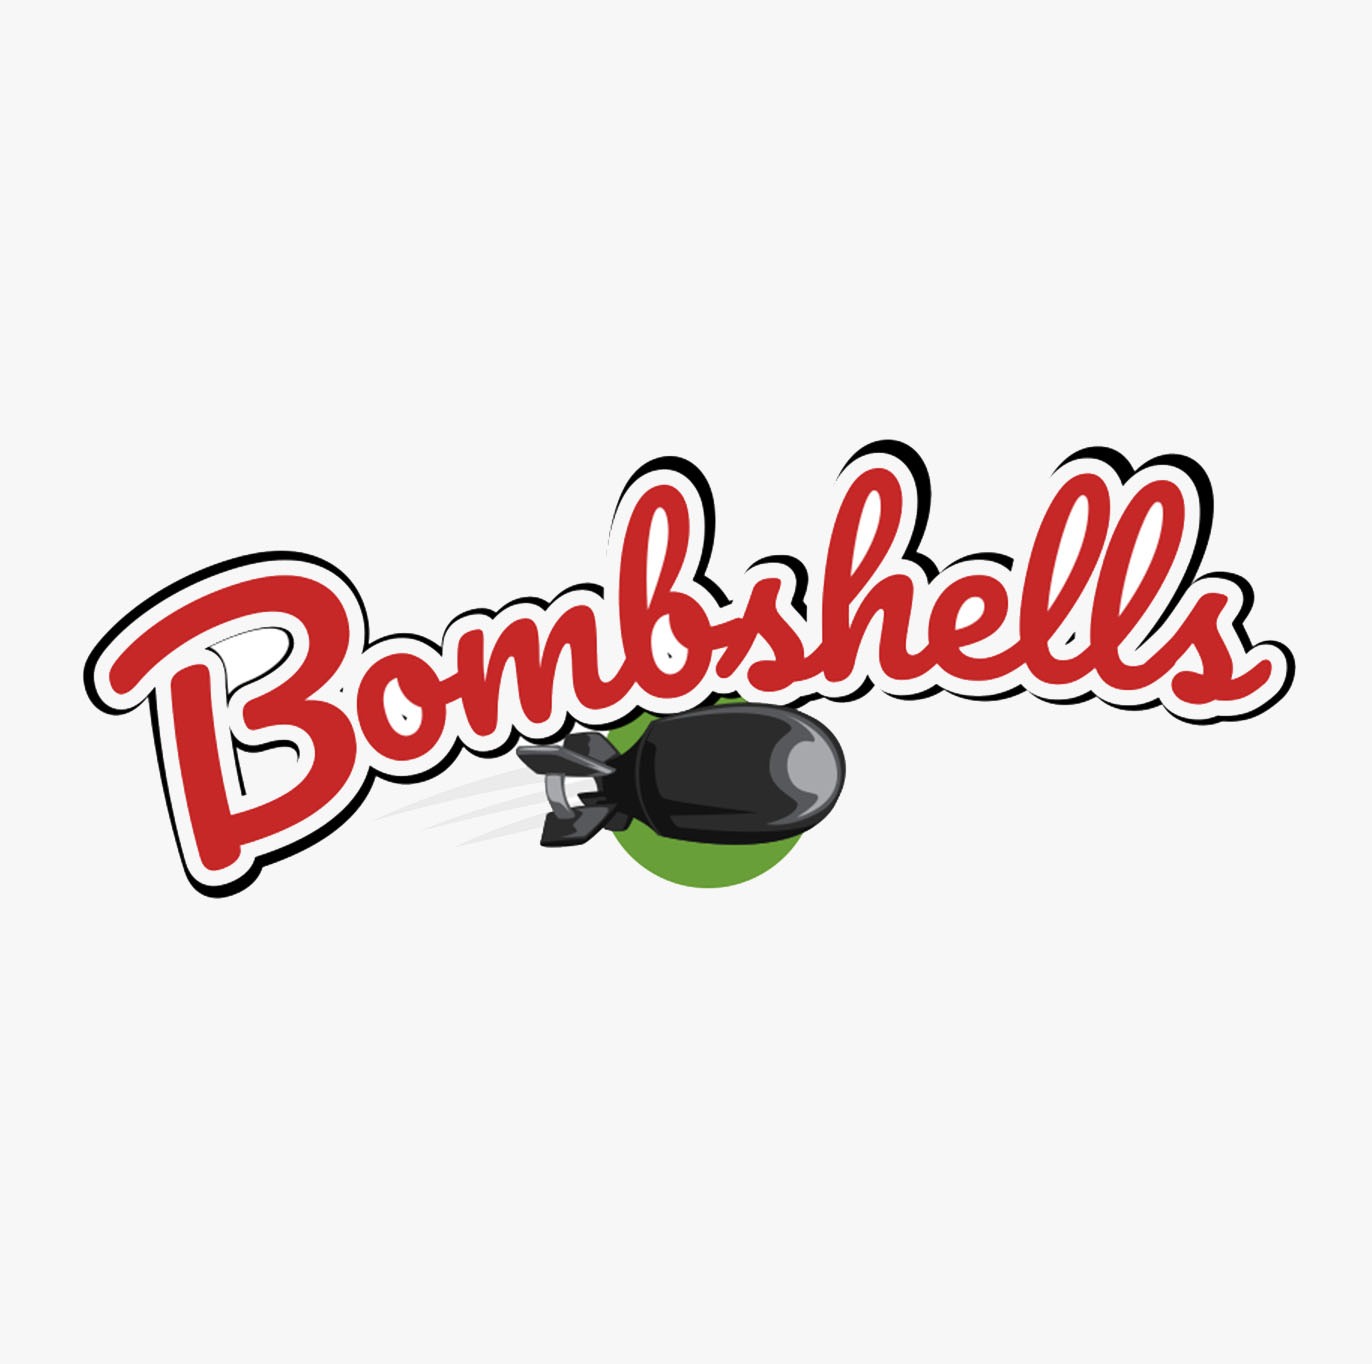 Bombshells